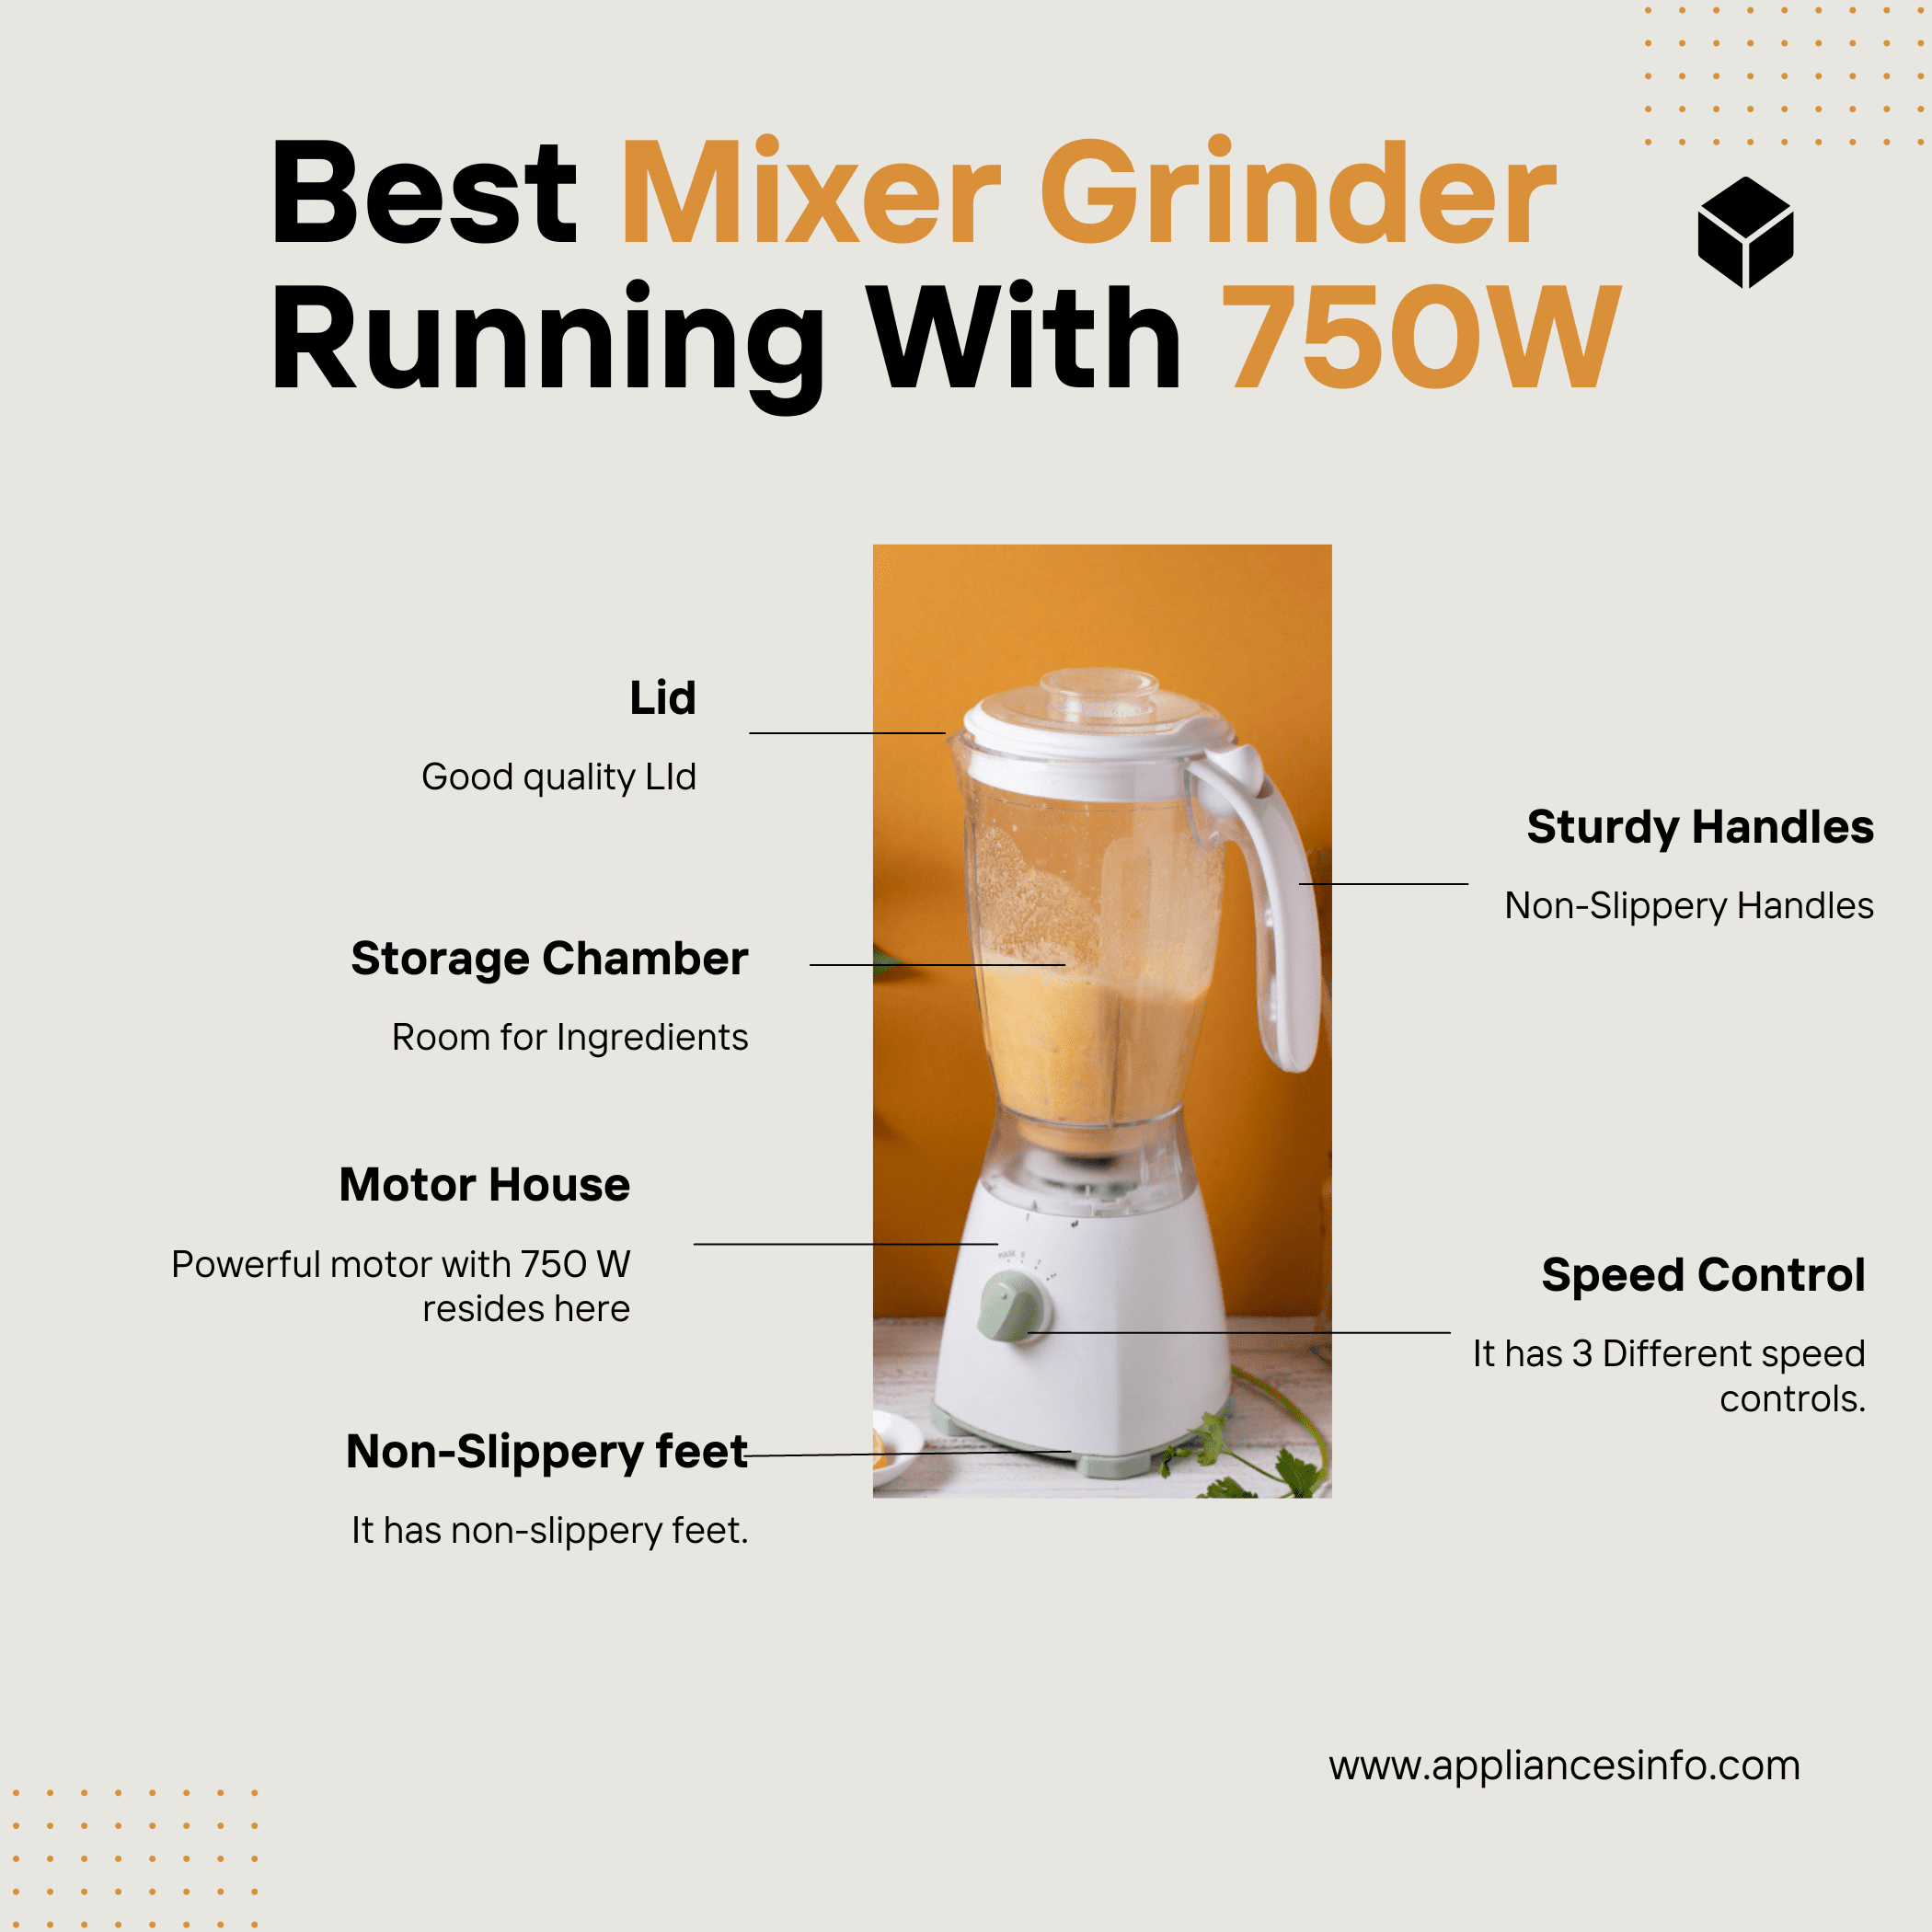 Best Mixer Grinder Running With 750W